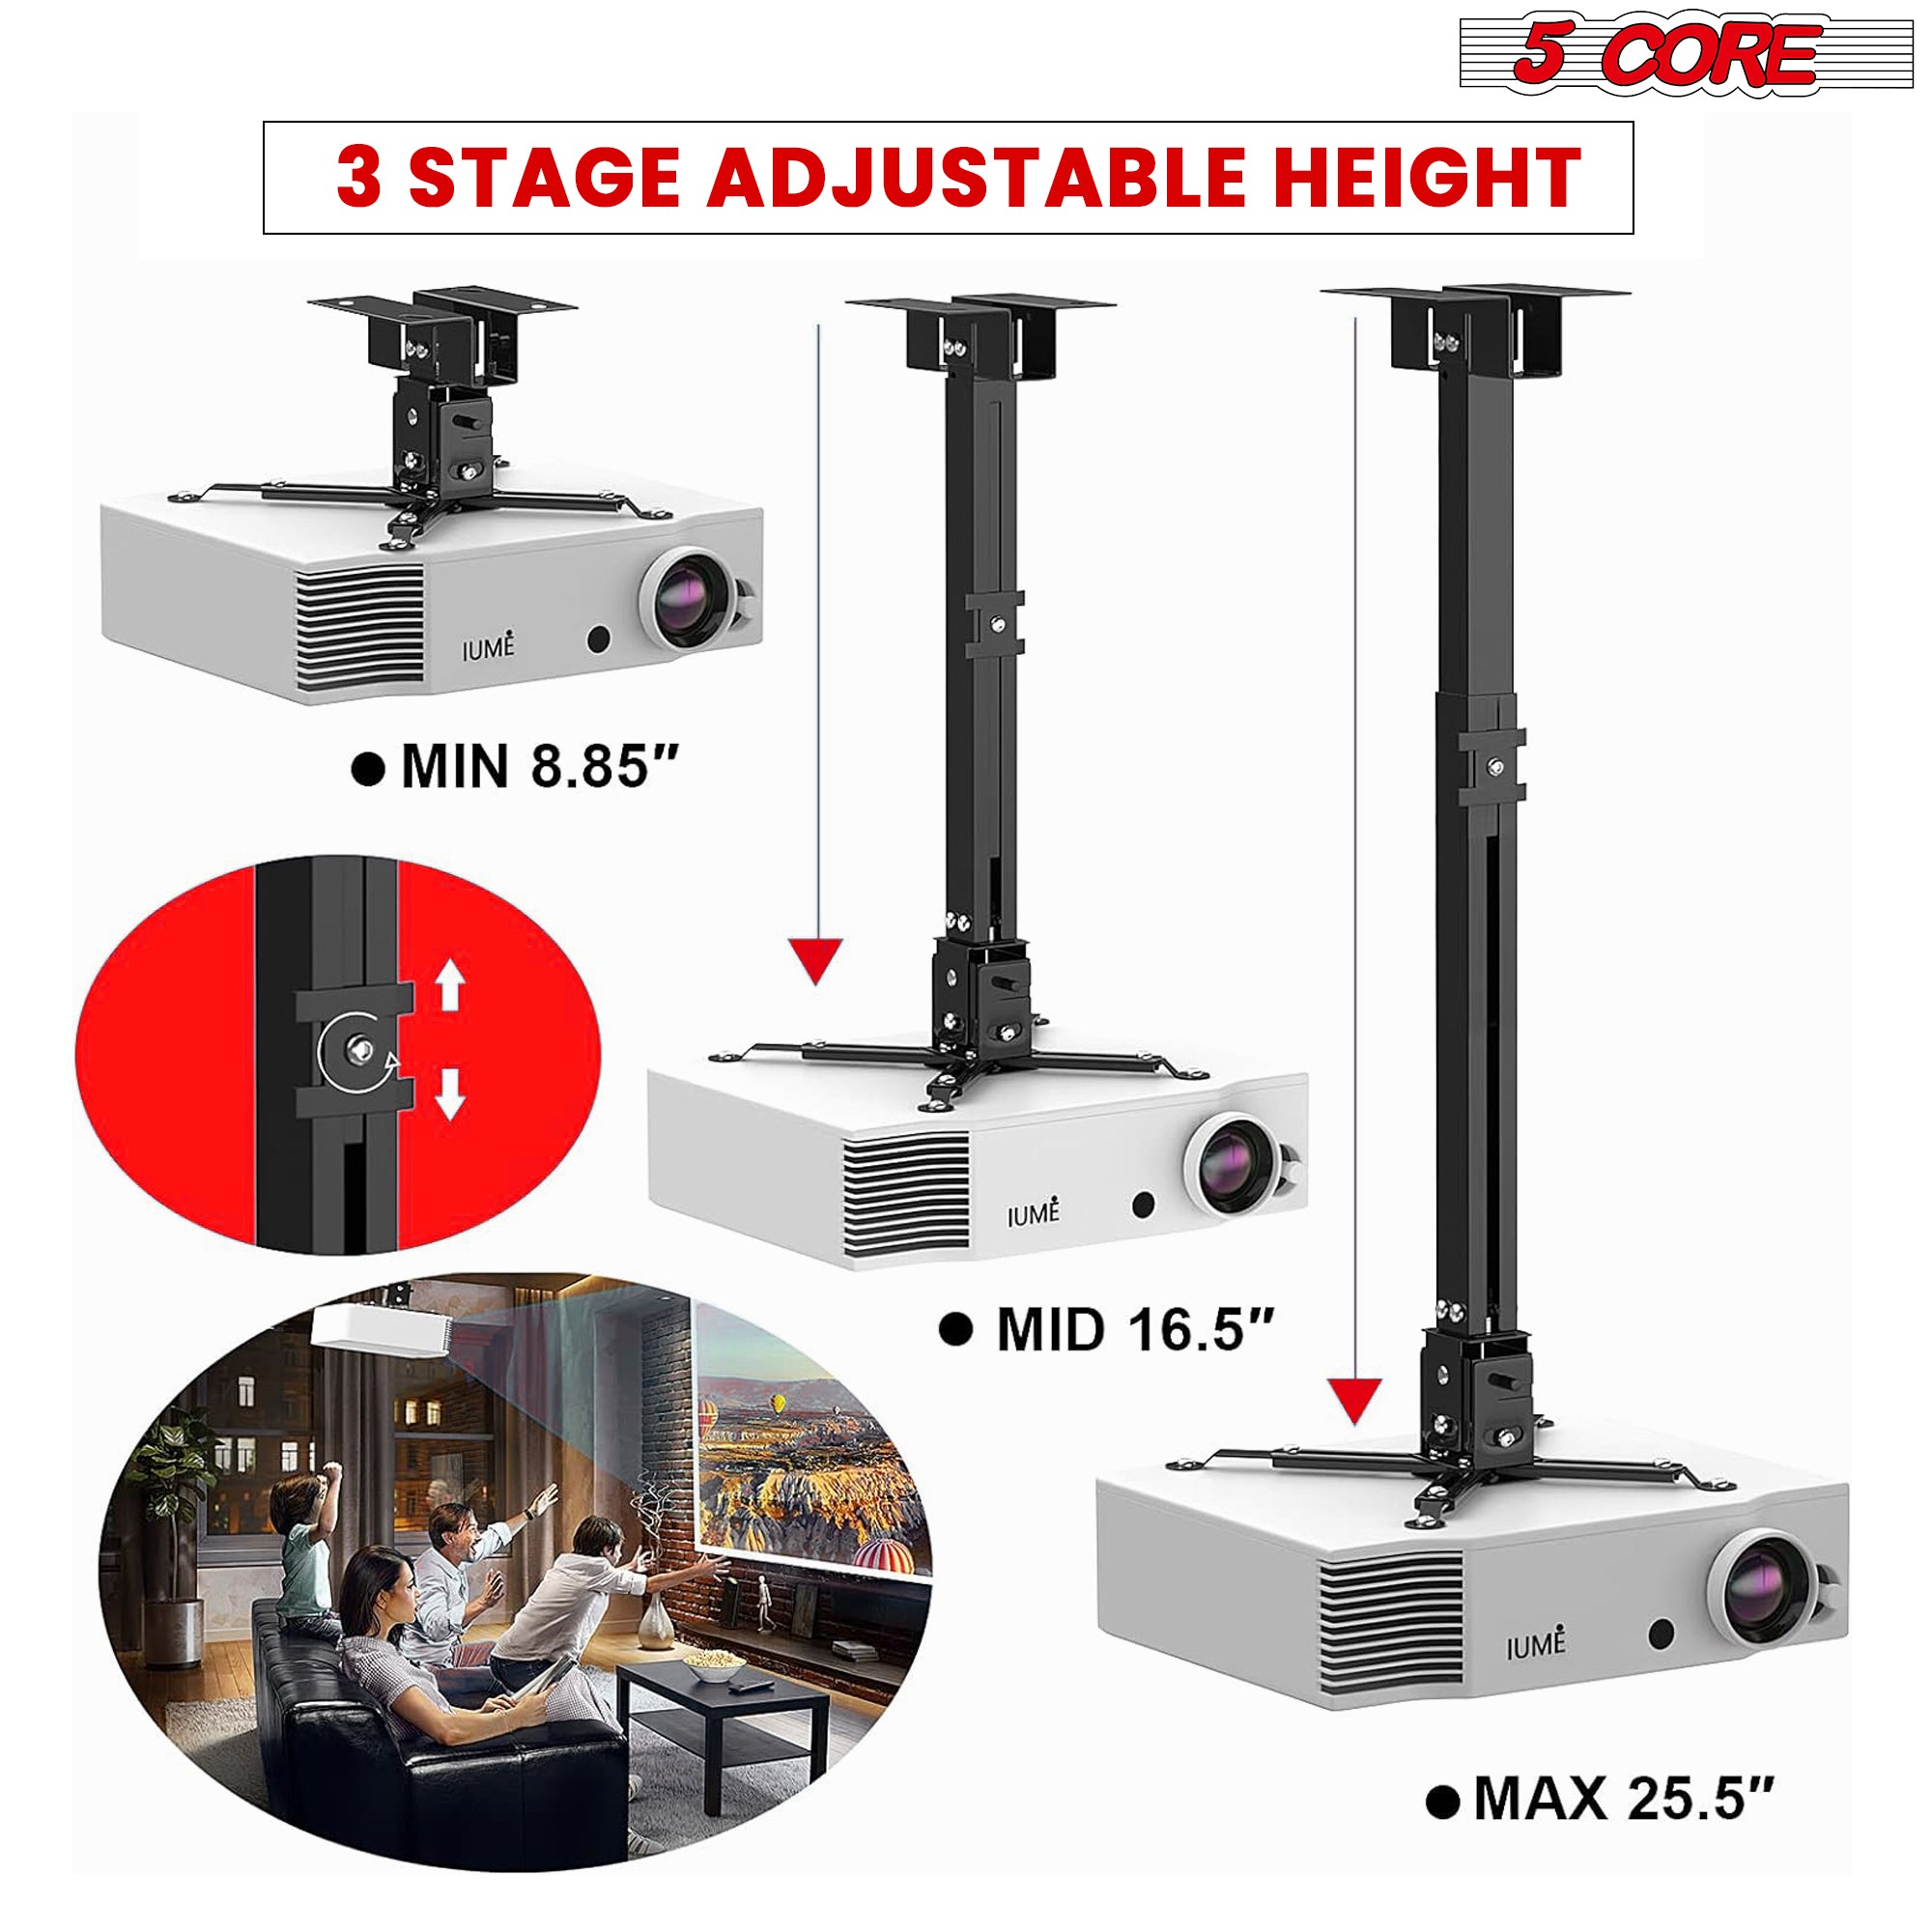 3 stage adjustable height